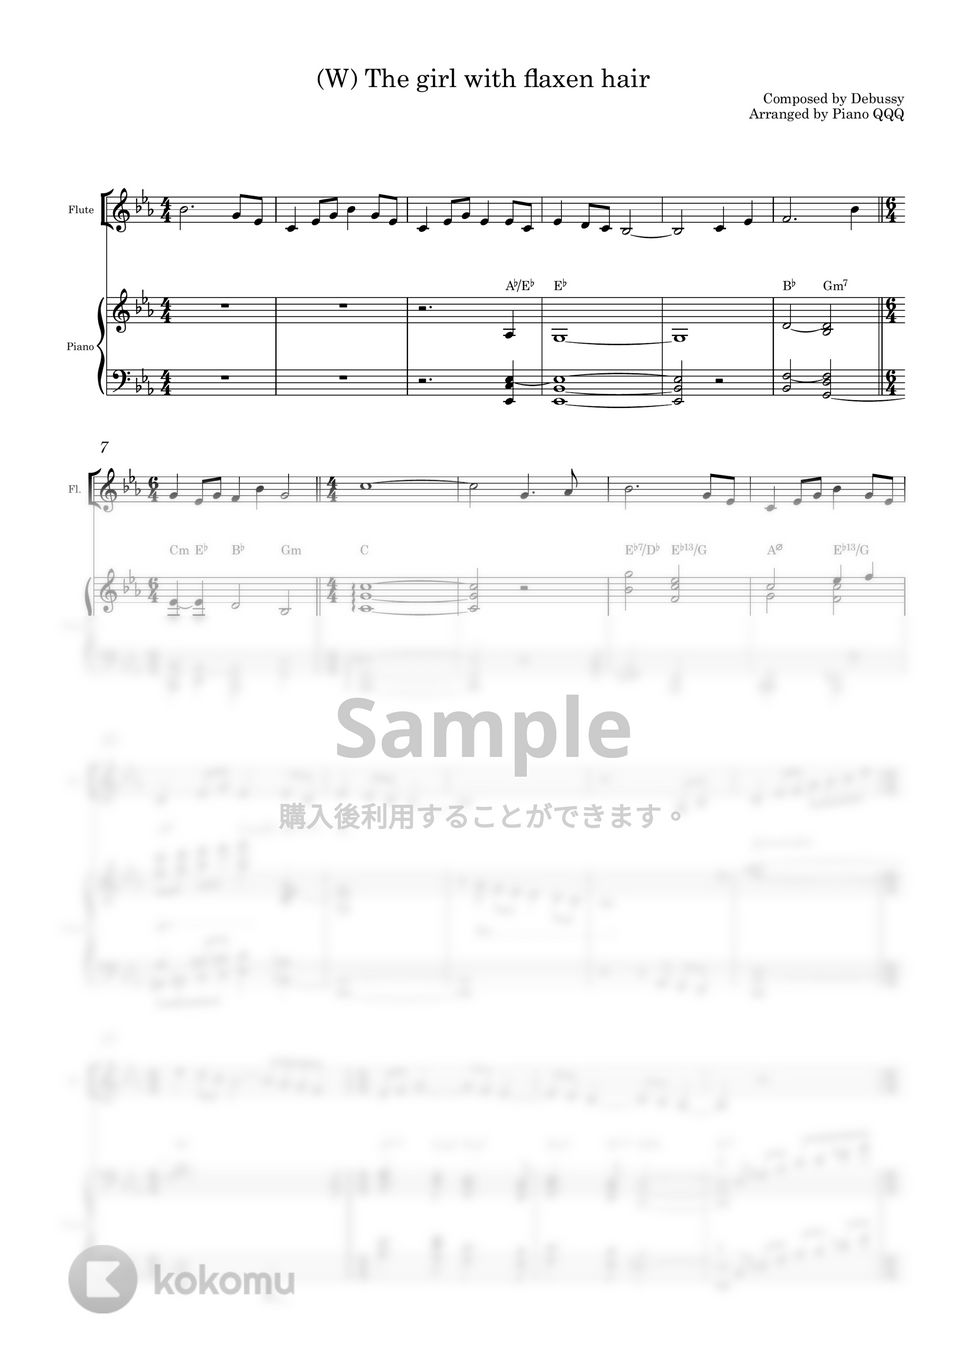 ドビュッシ - 亜麻色の髪の乙女 (デュエット/ピアノと楽器) by Piano QQQ